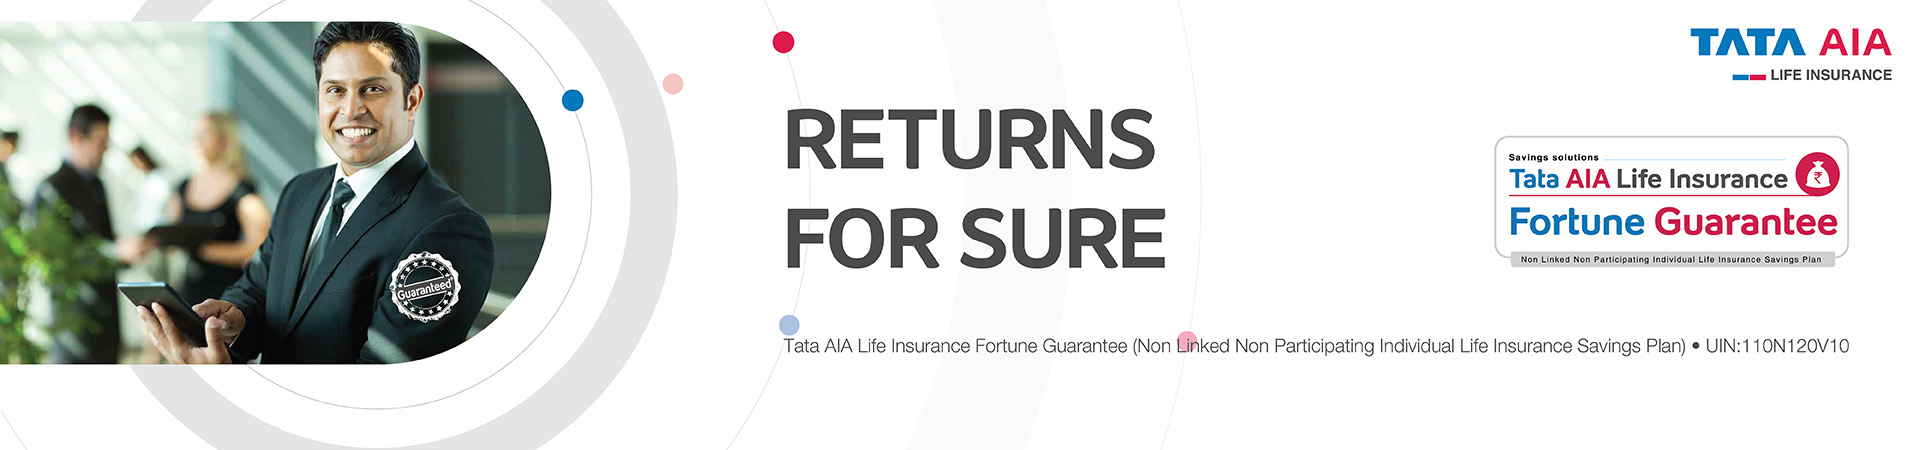 Tata AIA Life Insurance Fortune Guarantee